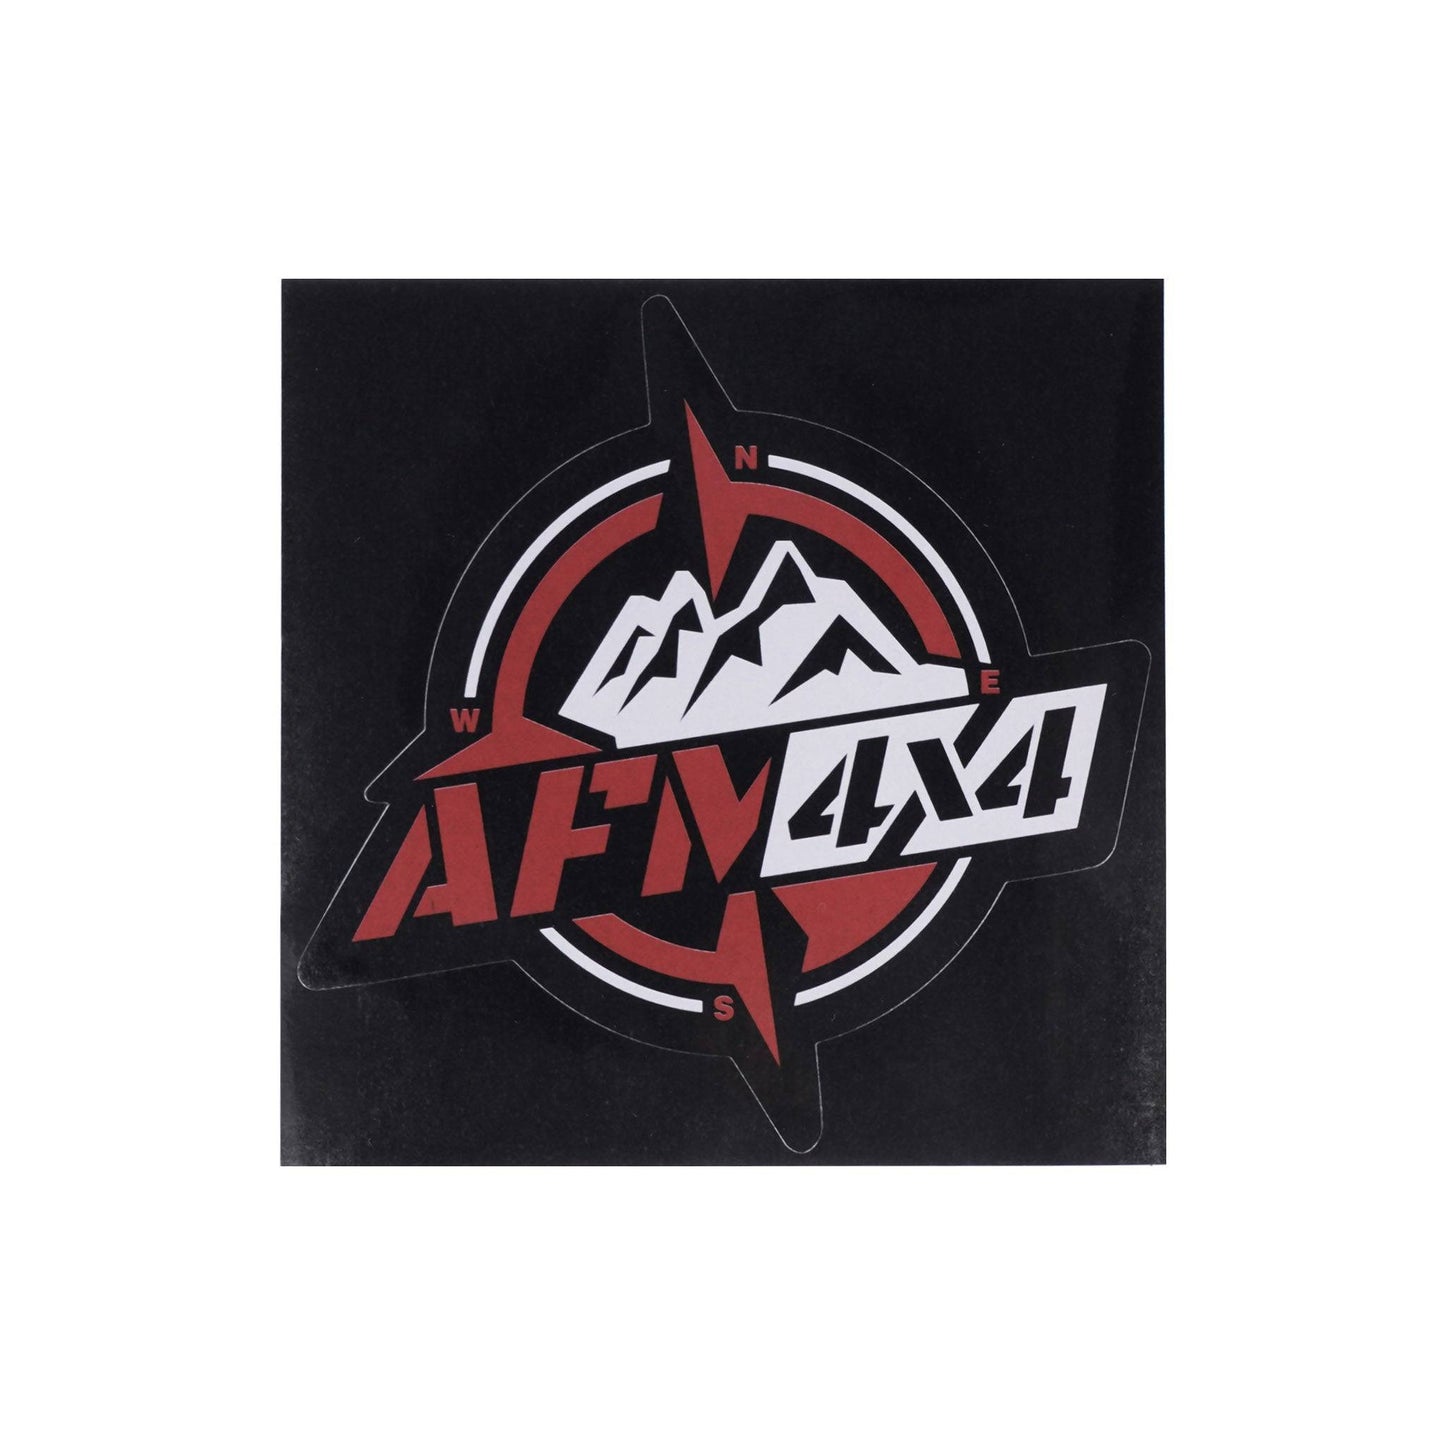 AFM4x4 Sticker - 10 x 10cm